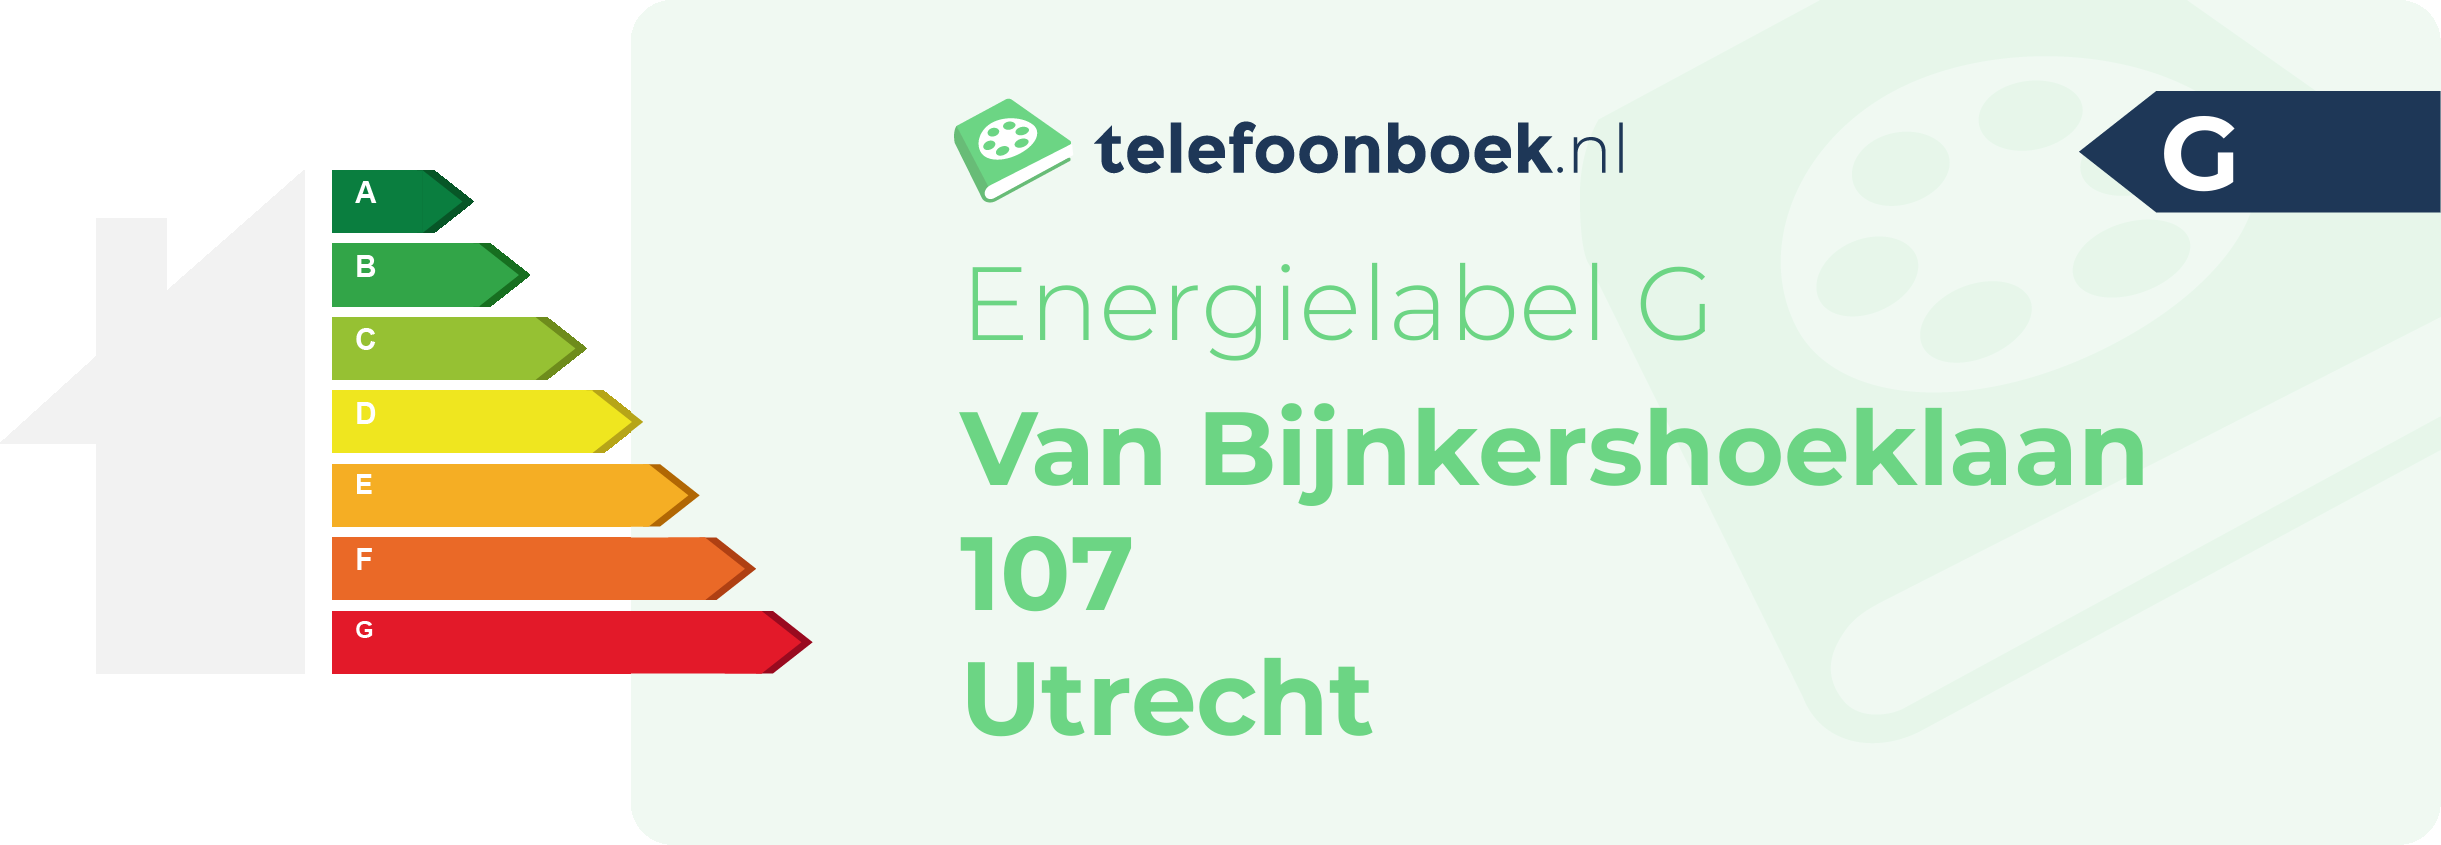 Energielabel Van Bijnkershoeklaan 107 Utrecht